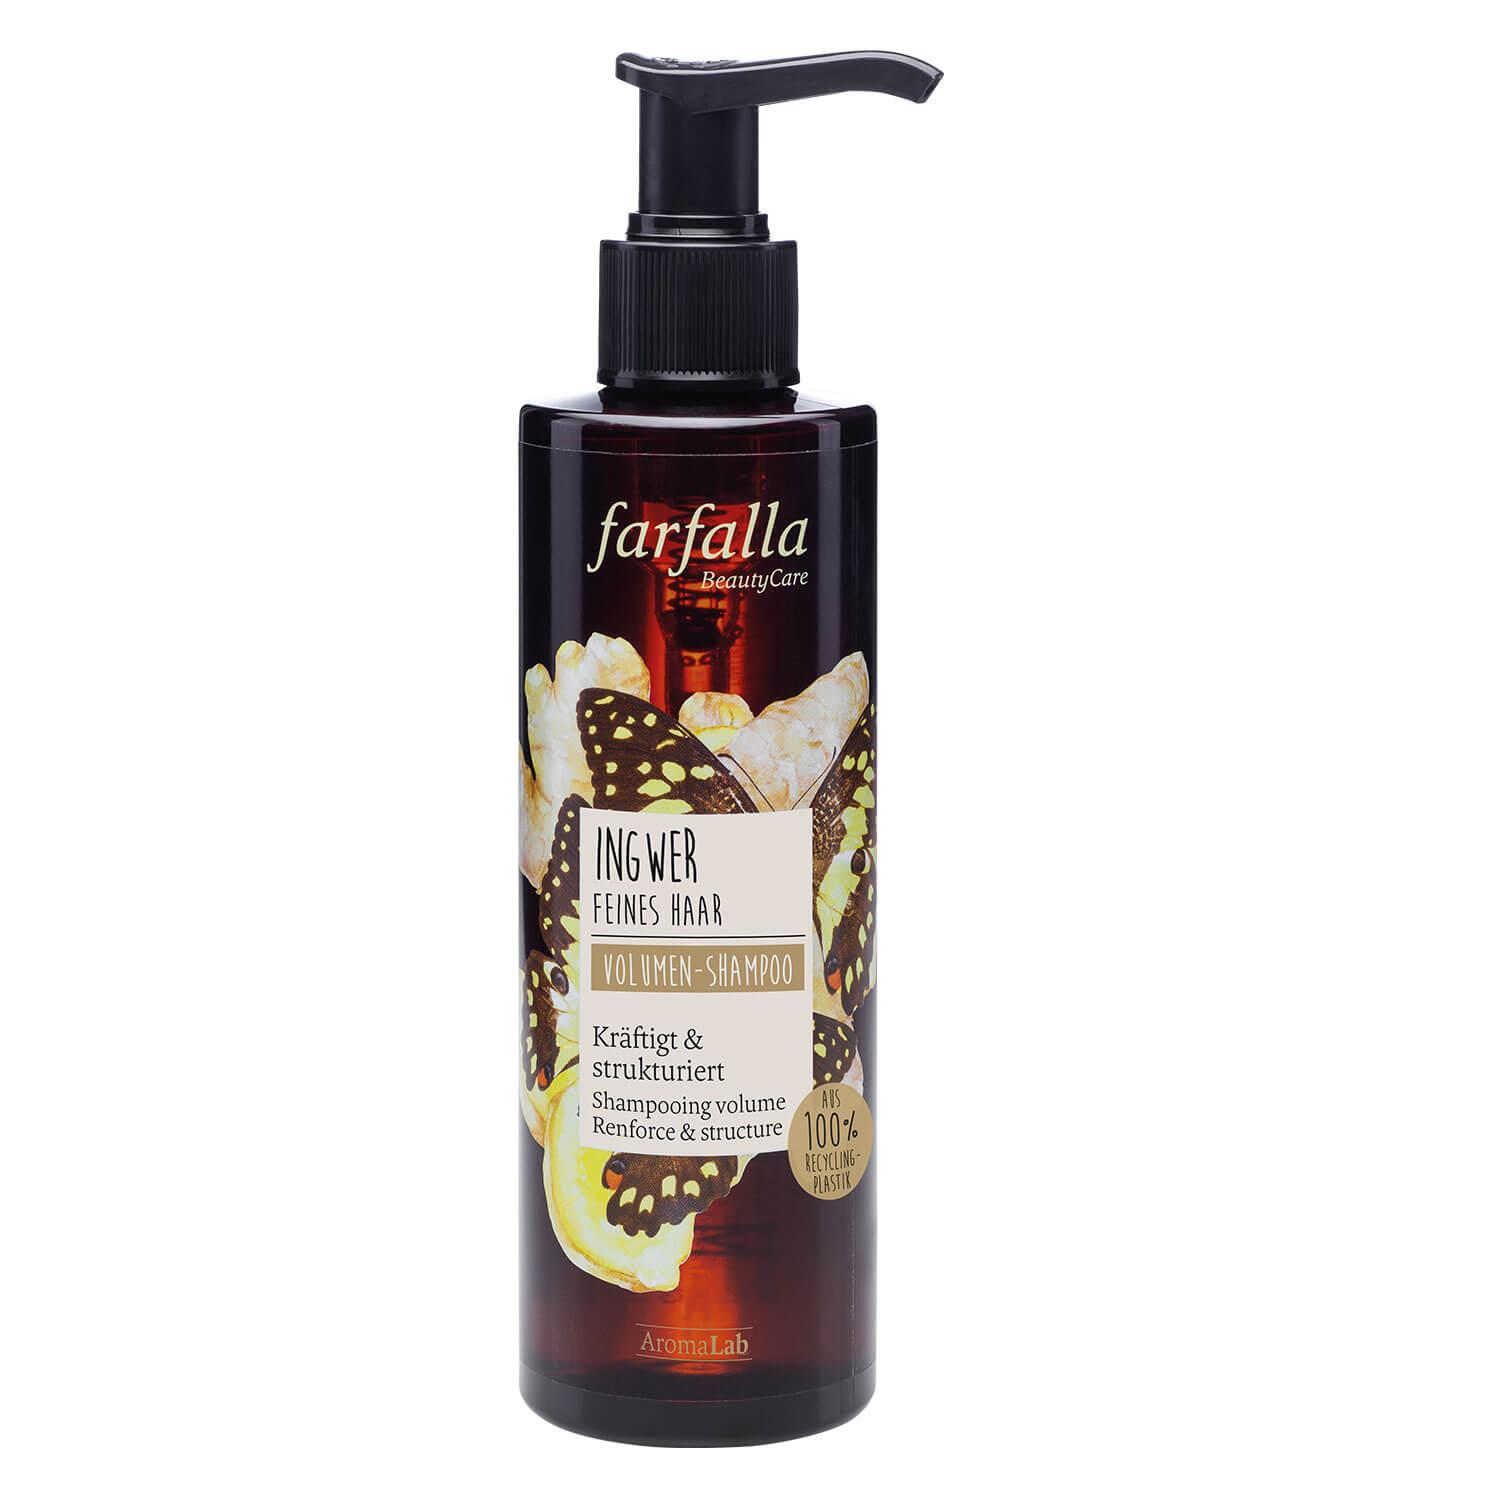 Farfalla Hair Care - Ingwer Volumen-Shampoo